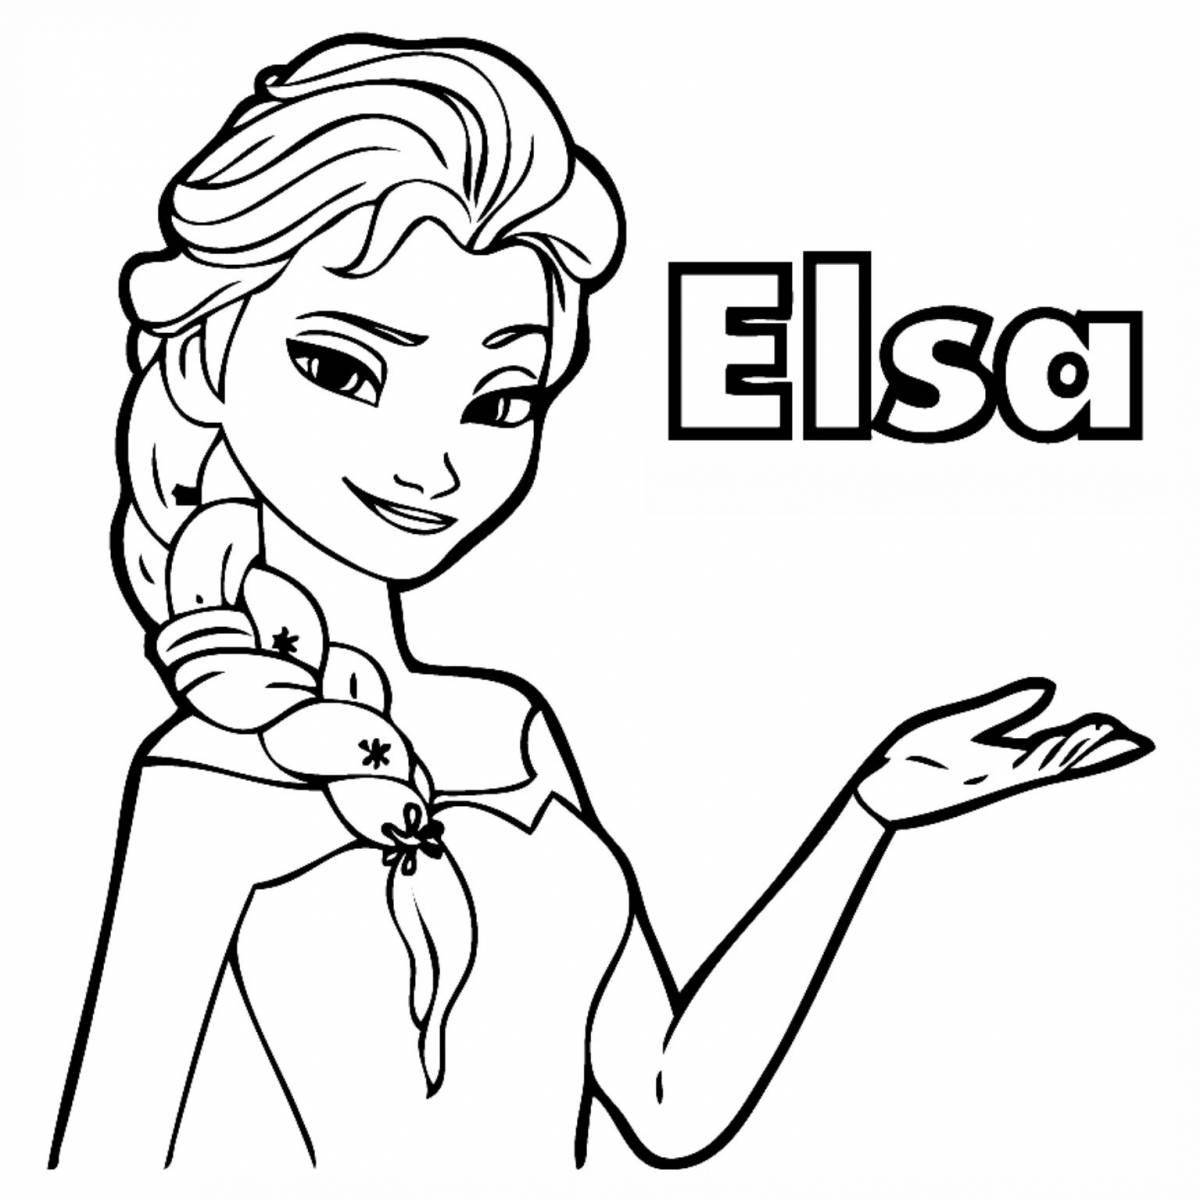 Elsa shining coloring lol